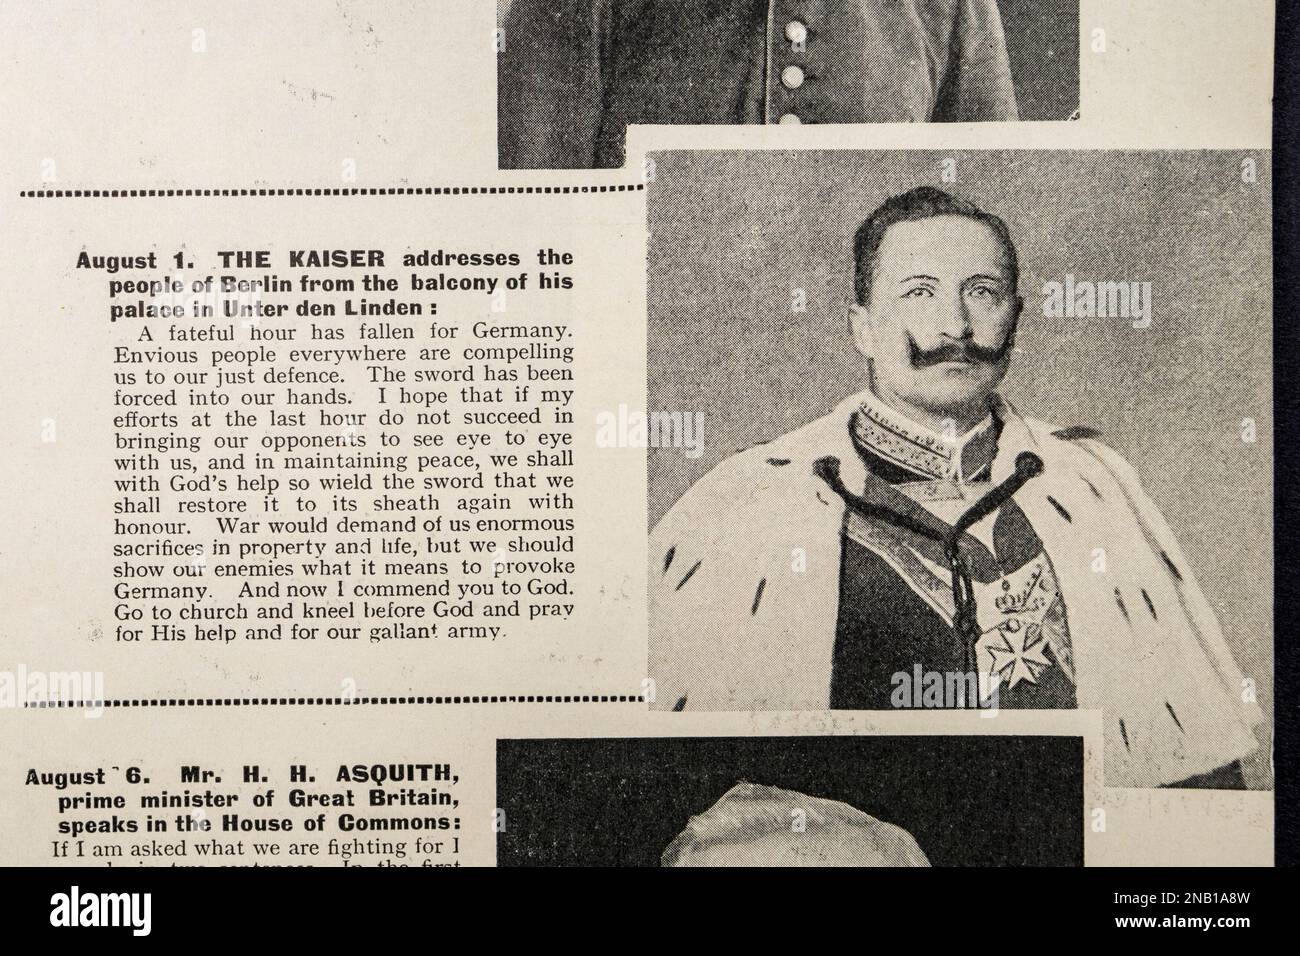 Photo du Kaiser Wilhelm II (Emporer allemand: Maison de Hohenzollern) dans la guerre mondiale 1914-1918 A photographié l'histoire (1934). Banque D'Images